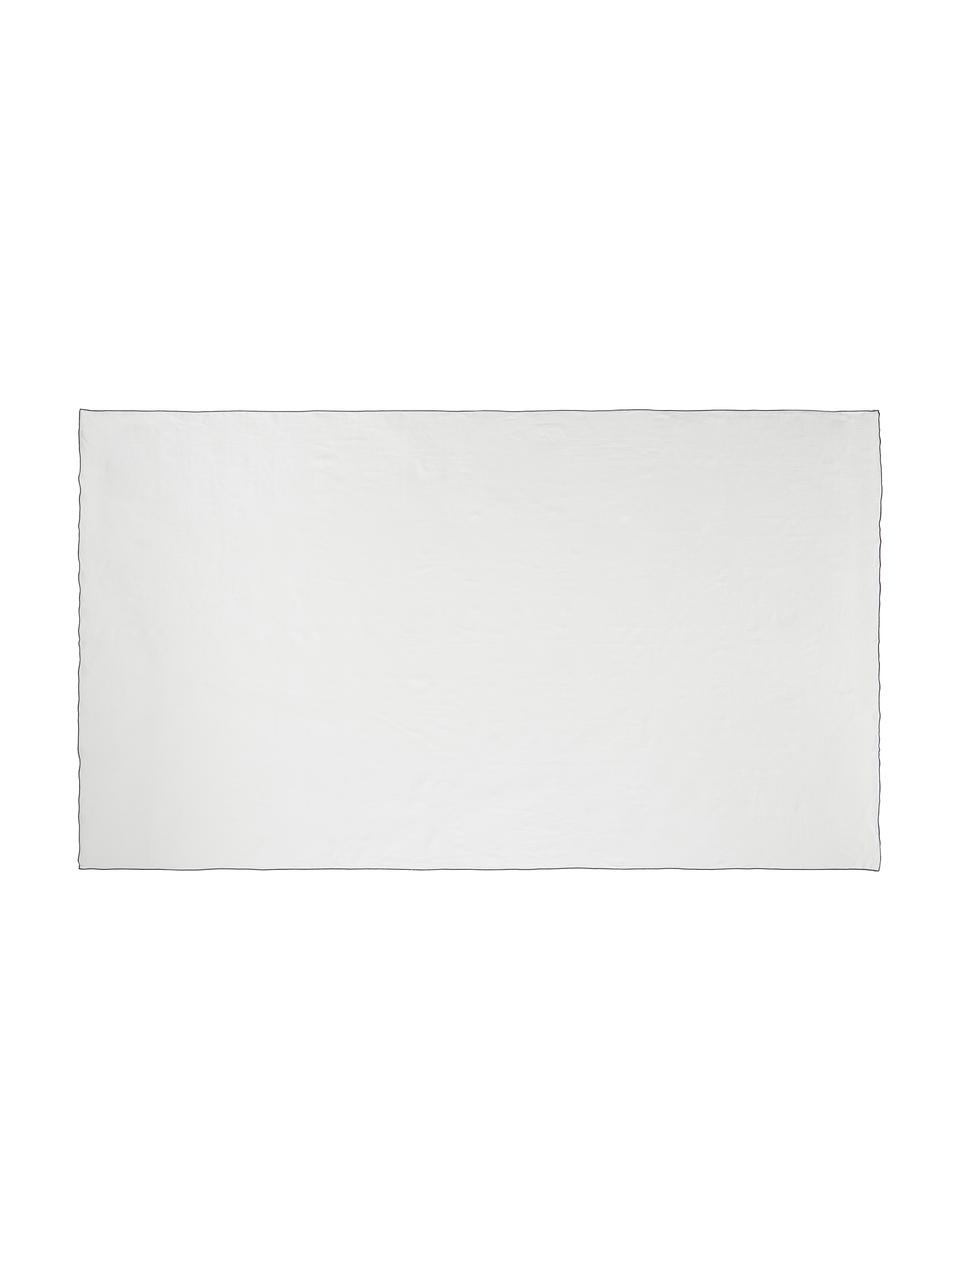 Leinen-Tischdecke Vilnia mit Umkettelung, 100 % Leinen, Weiß, Schwarz, 6-8 Personen (L 250 x B 150 cm)